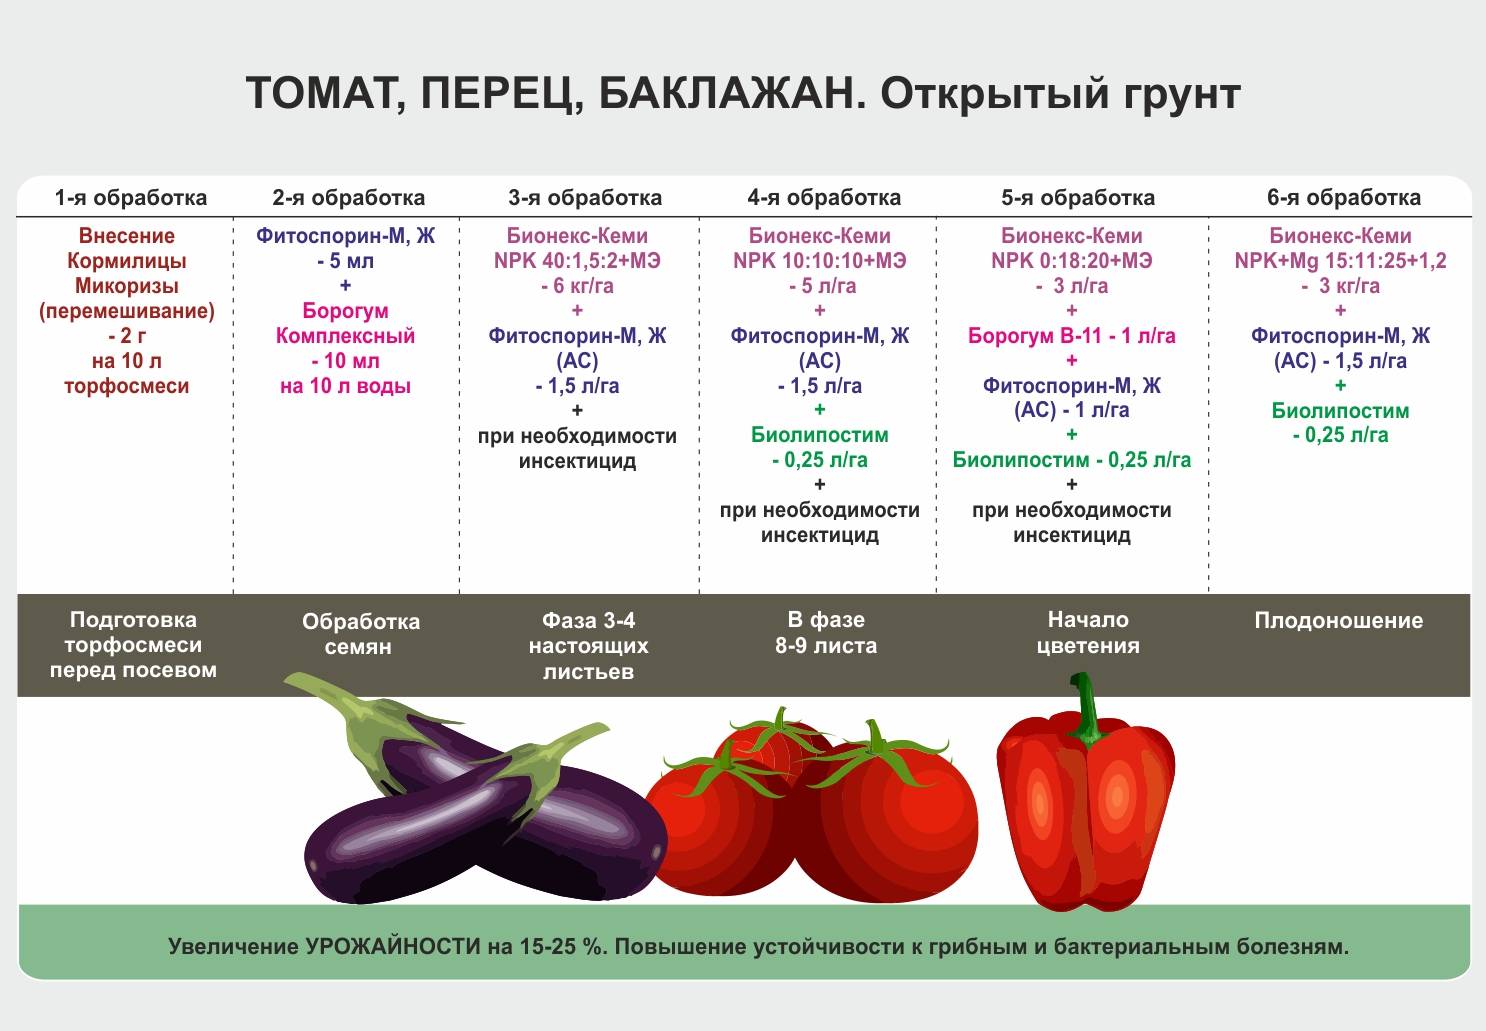 Чем подкормить помидоры: повышаем урожайность с помощью удобрений